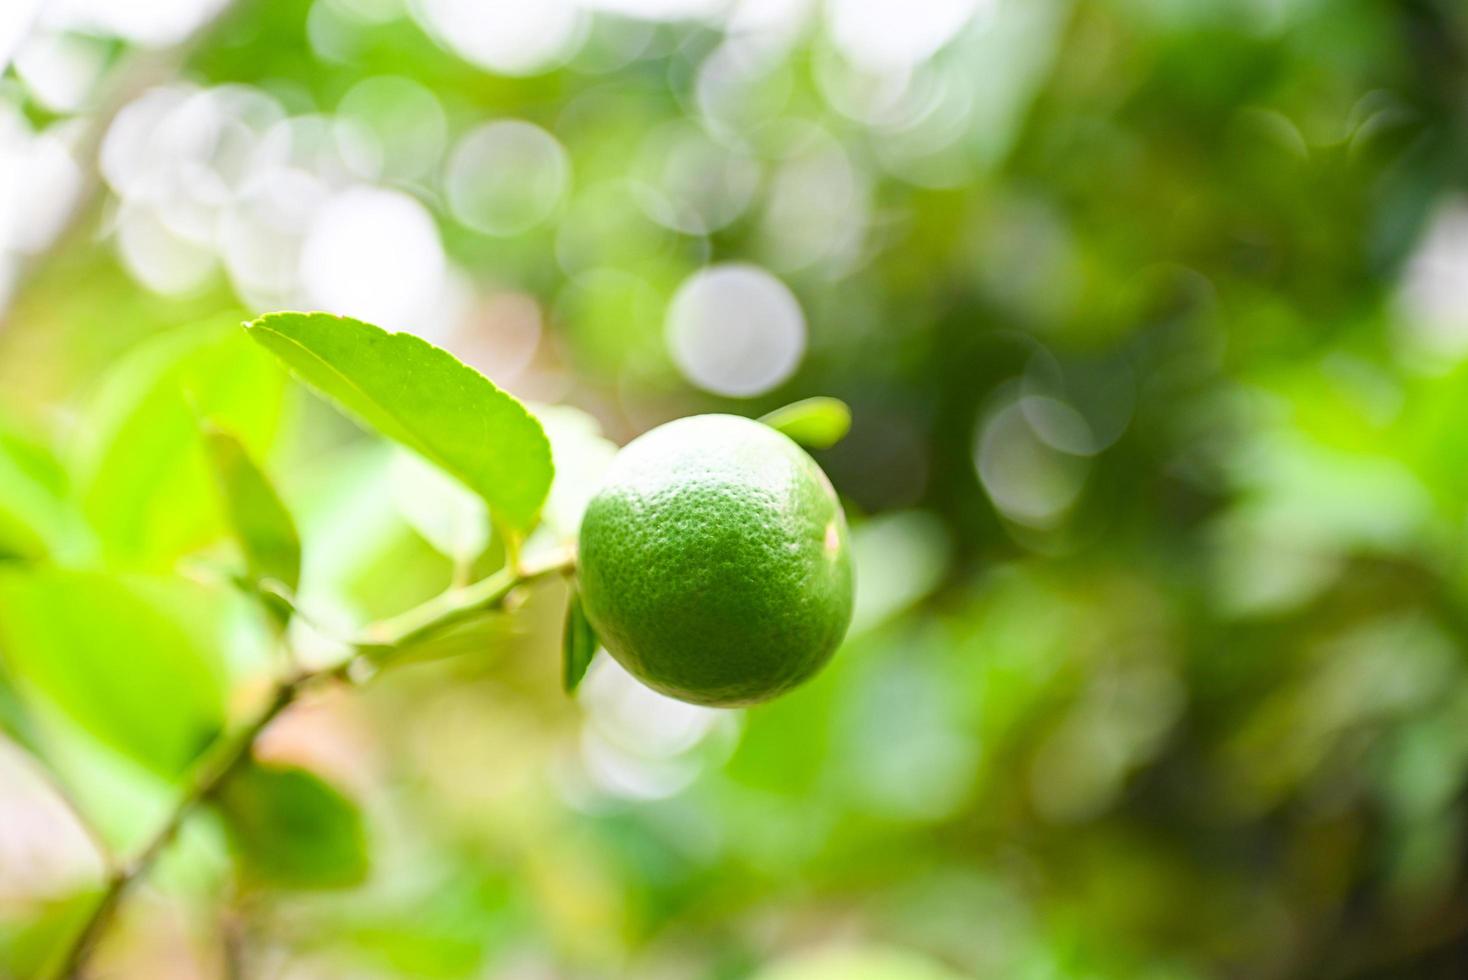 limas verdes en un árbol, cítricos de lima fresca con alto contenido de vitamina c en la granja del jardín agrícola con fondo verde borroso de la naturaleza en verano foto